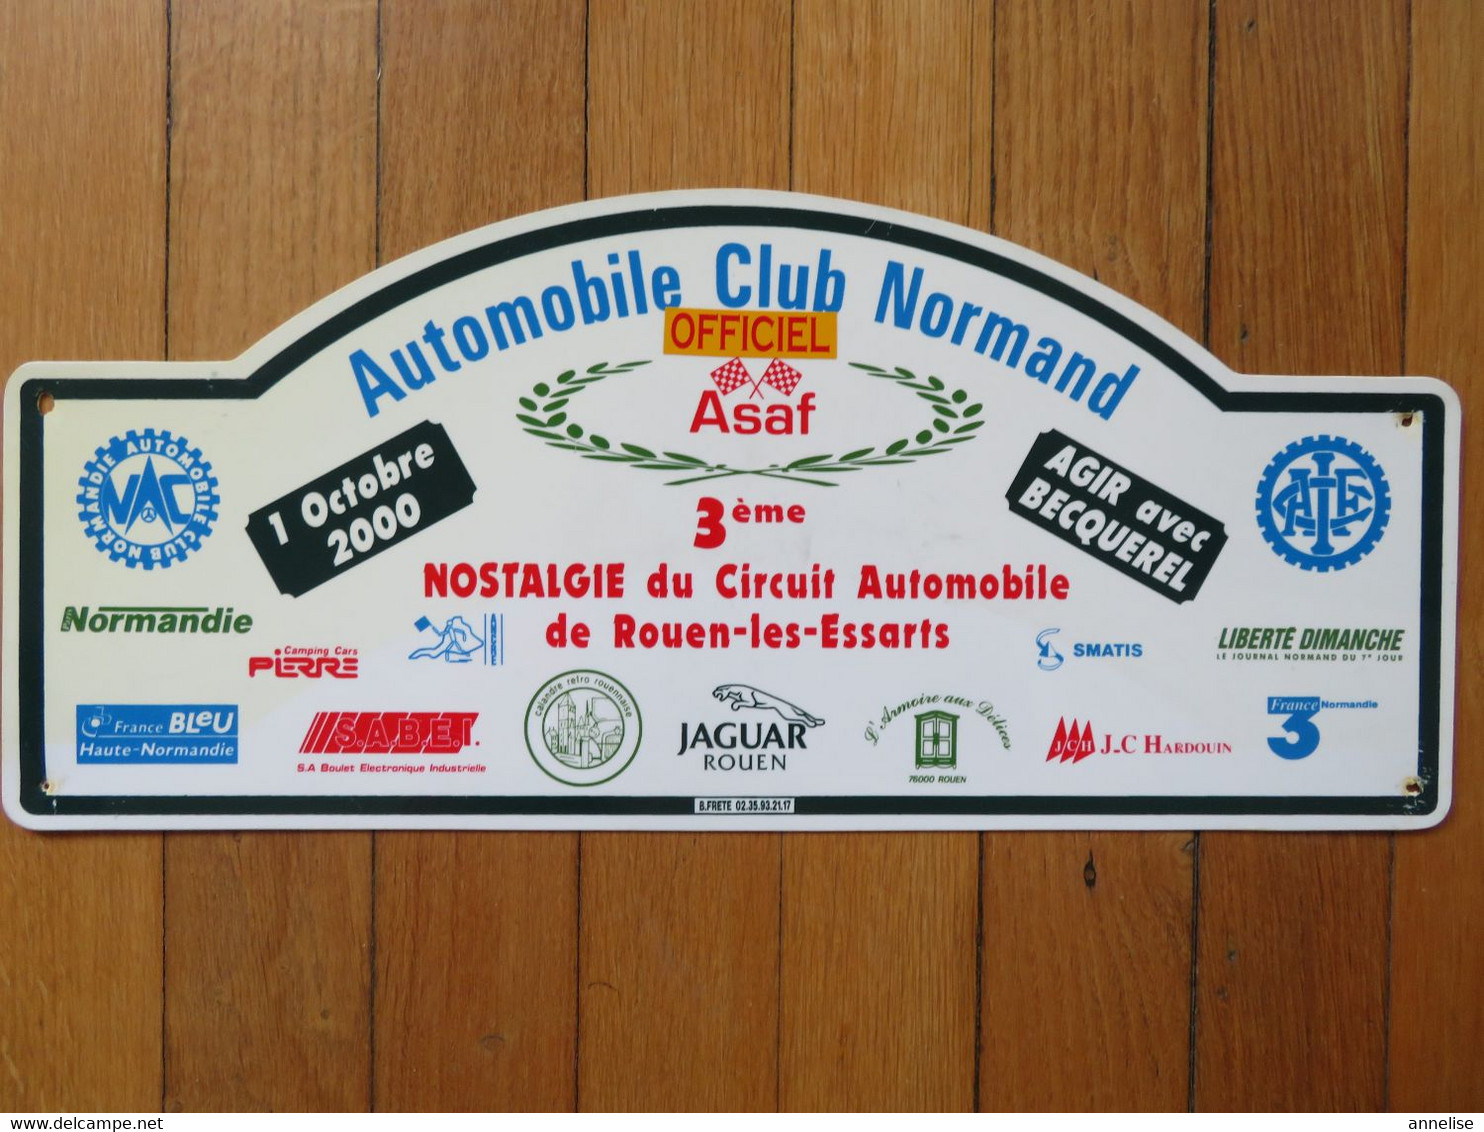 Plaque De Rallye Automobile 1 Octobre 2000 "Officiel" 3è Nostalgie Circuit 76 Rouen-les-Essarts Automobile Club Normand - Rallye (Rally) Plates